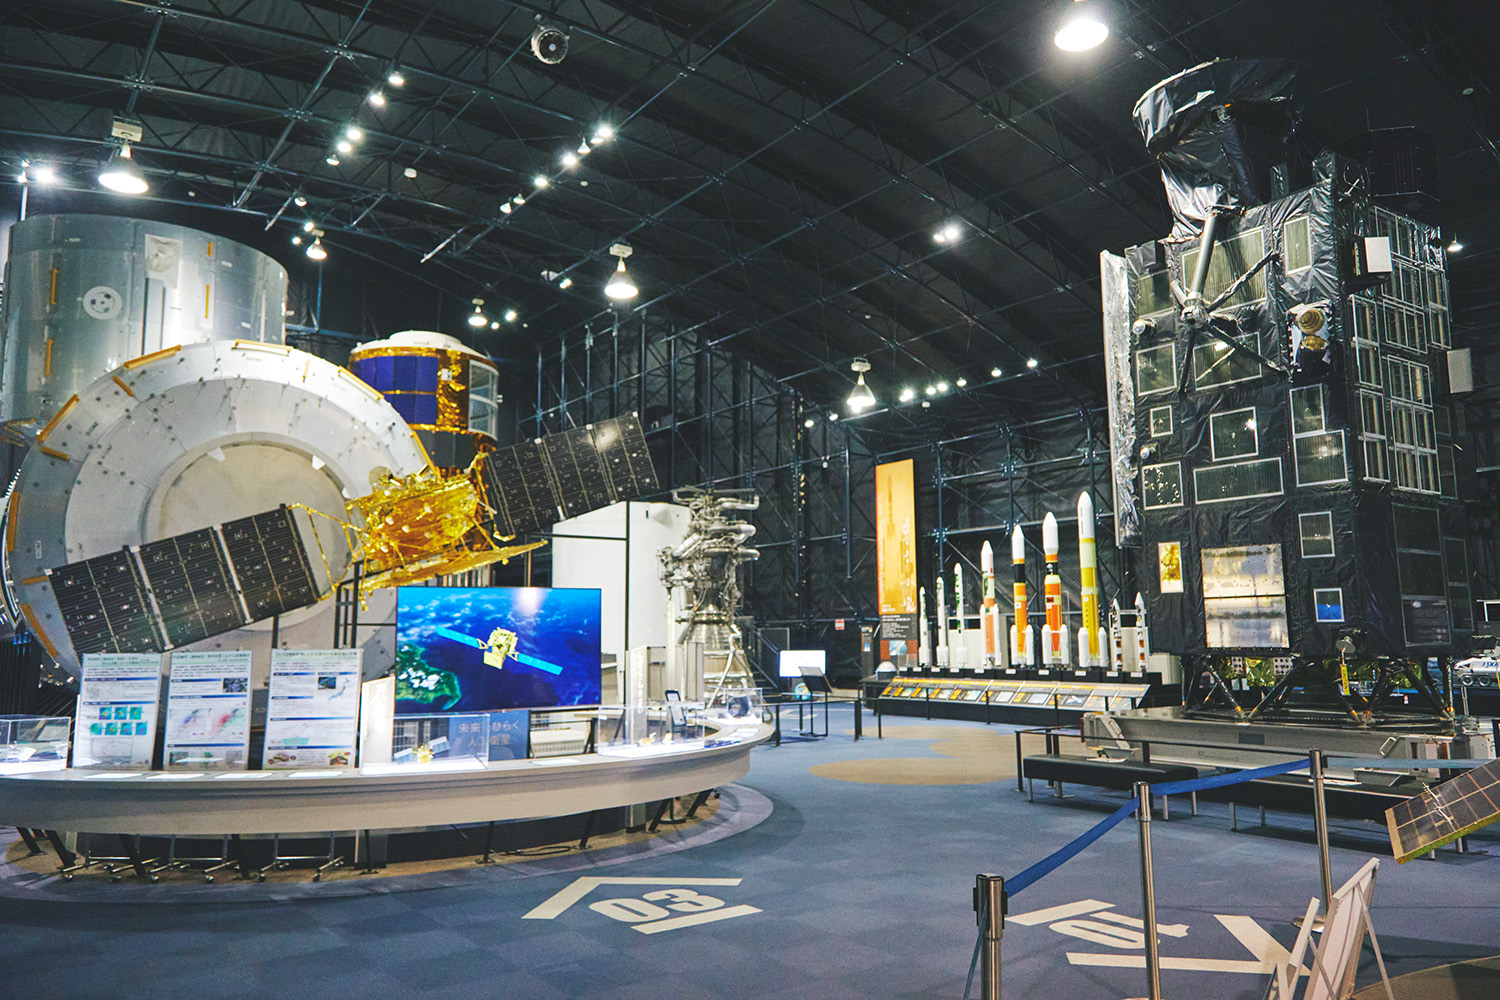 展示館「スペースドーム」。写真右の黒い大きな衛星は、2007年に実際に打ち上げられた月周回衛星「かぐや」の試験モデル。